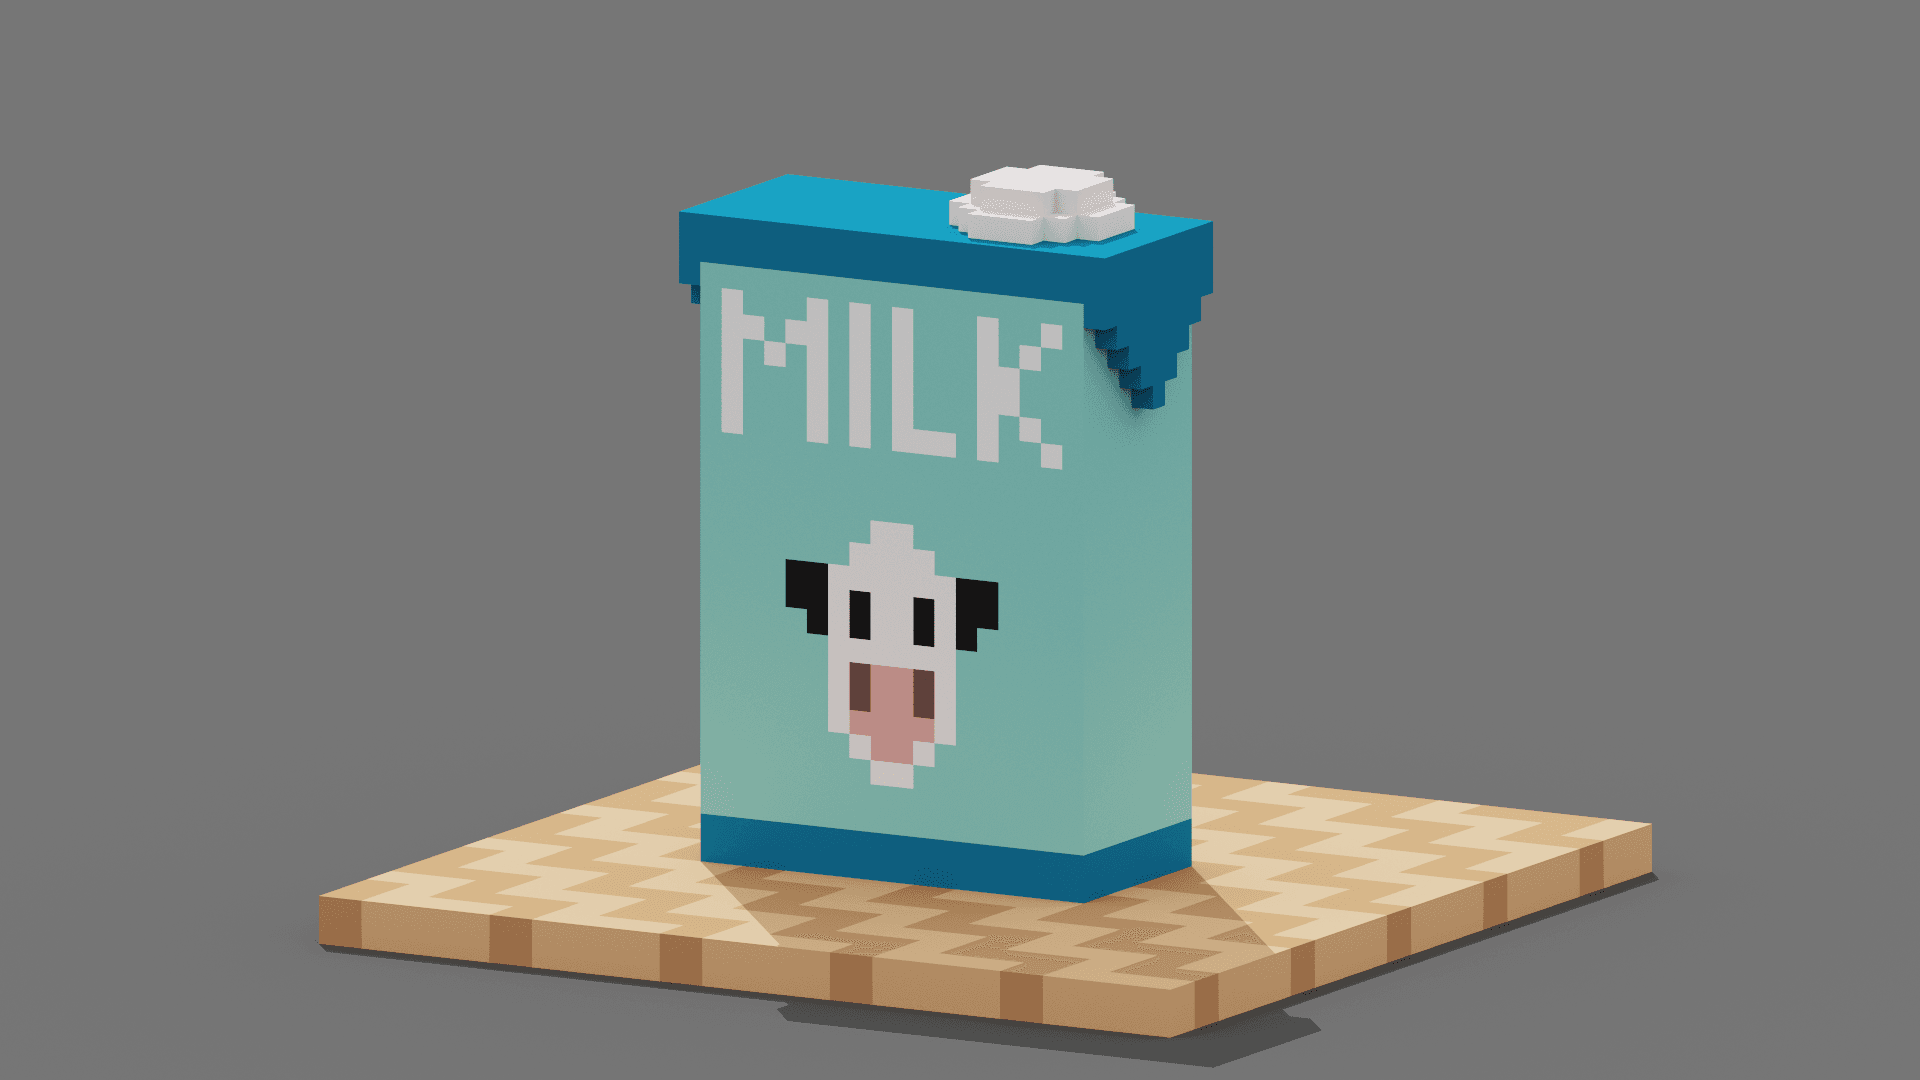 Milk.obj 3d model